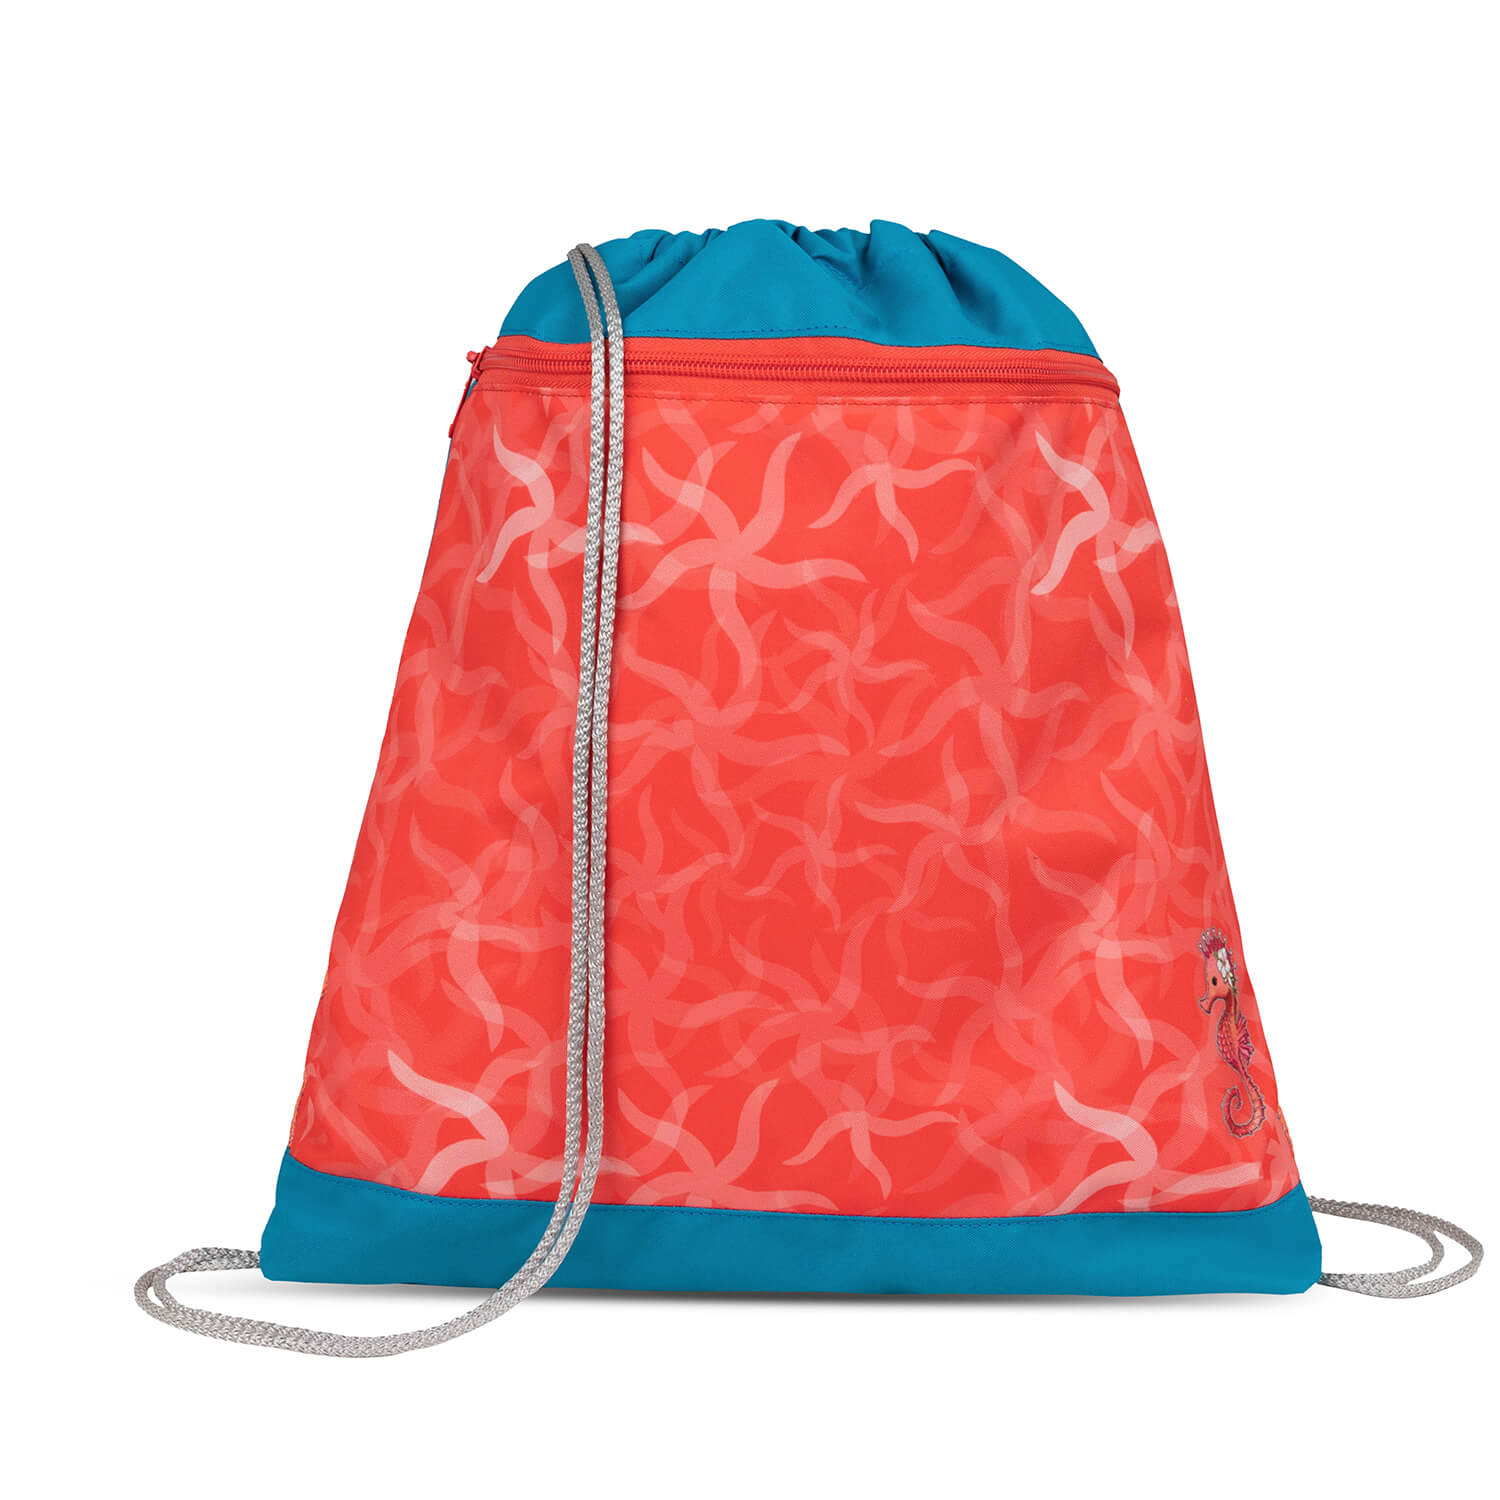 Mini-Fit Sea Queen schoolbag set 4 pcs